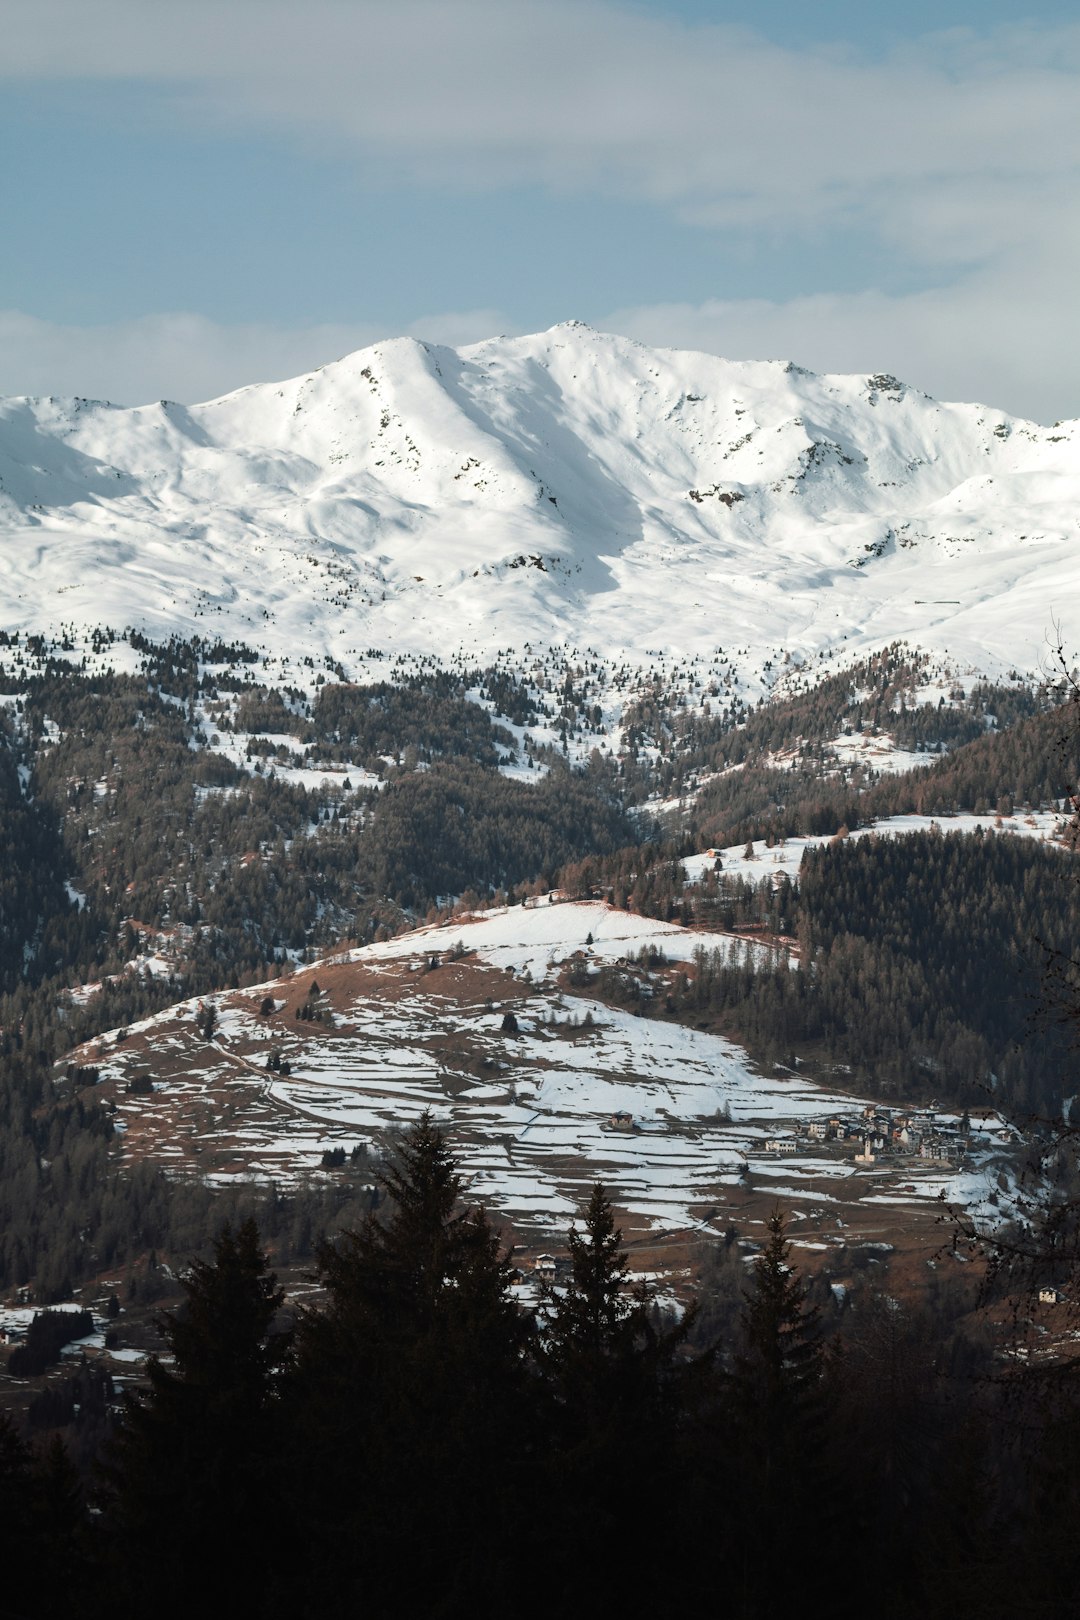 Mountain range photo spot Marilleva 1400 Ortler